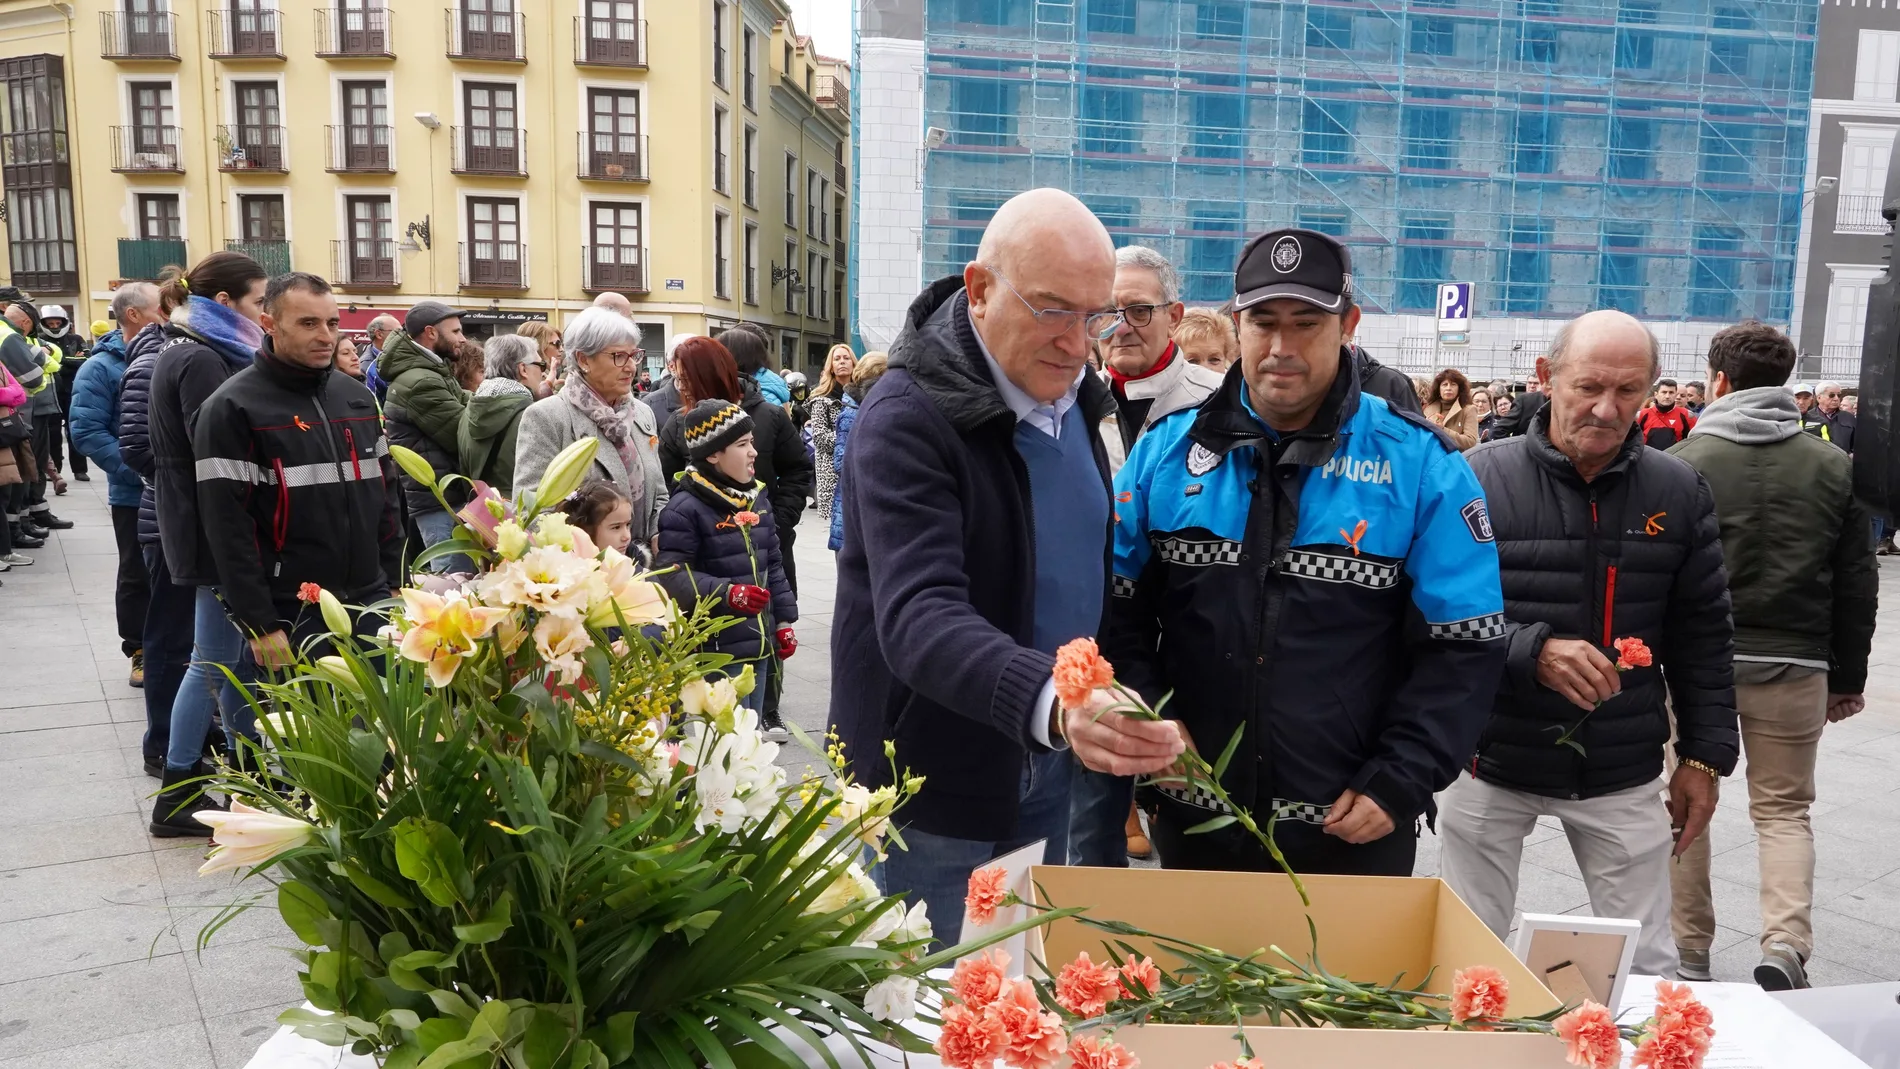 Carnero deposita una flor en recuerdo de las víctimas en accidente de tráfico